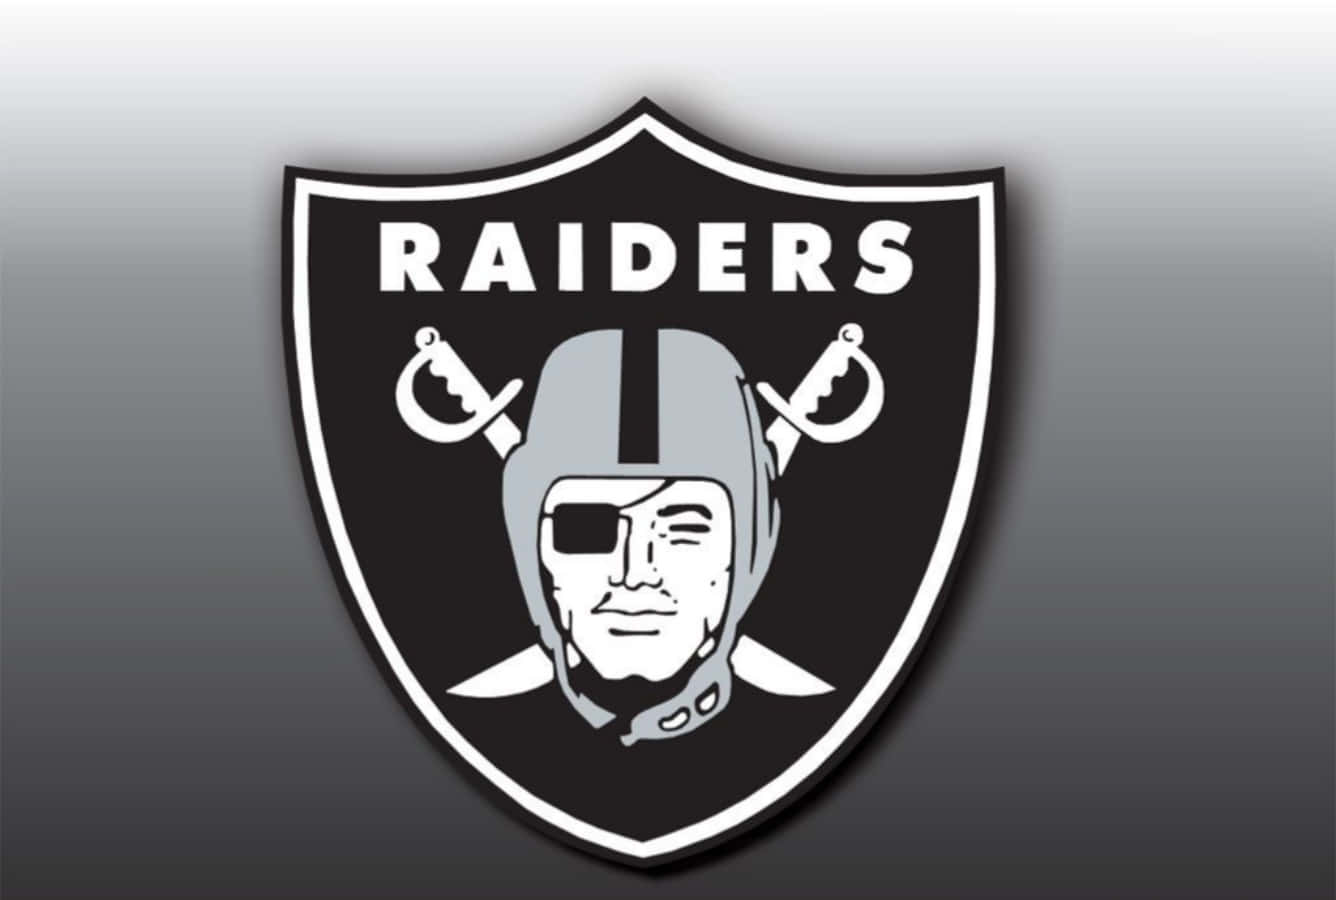 Logotipodel Equipo De Fútbol Americano Oakland Raiders. Fondo de pantalla